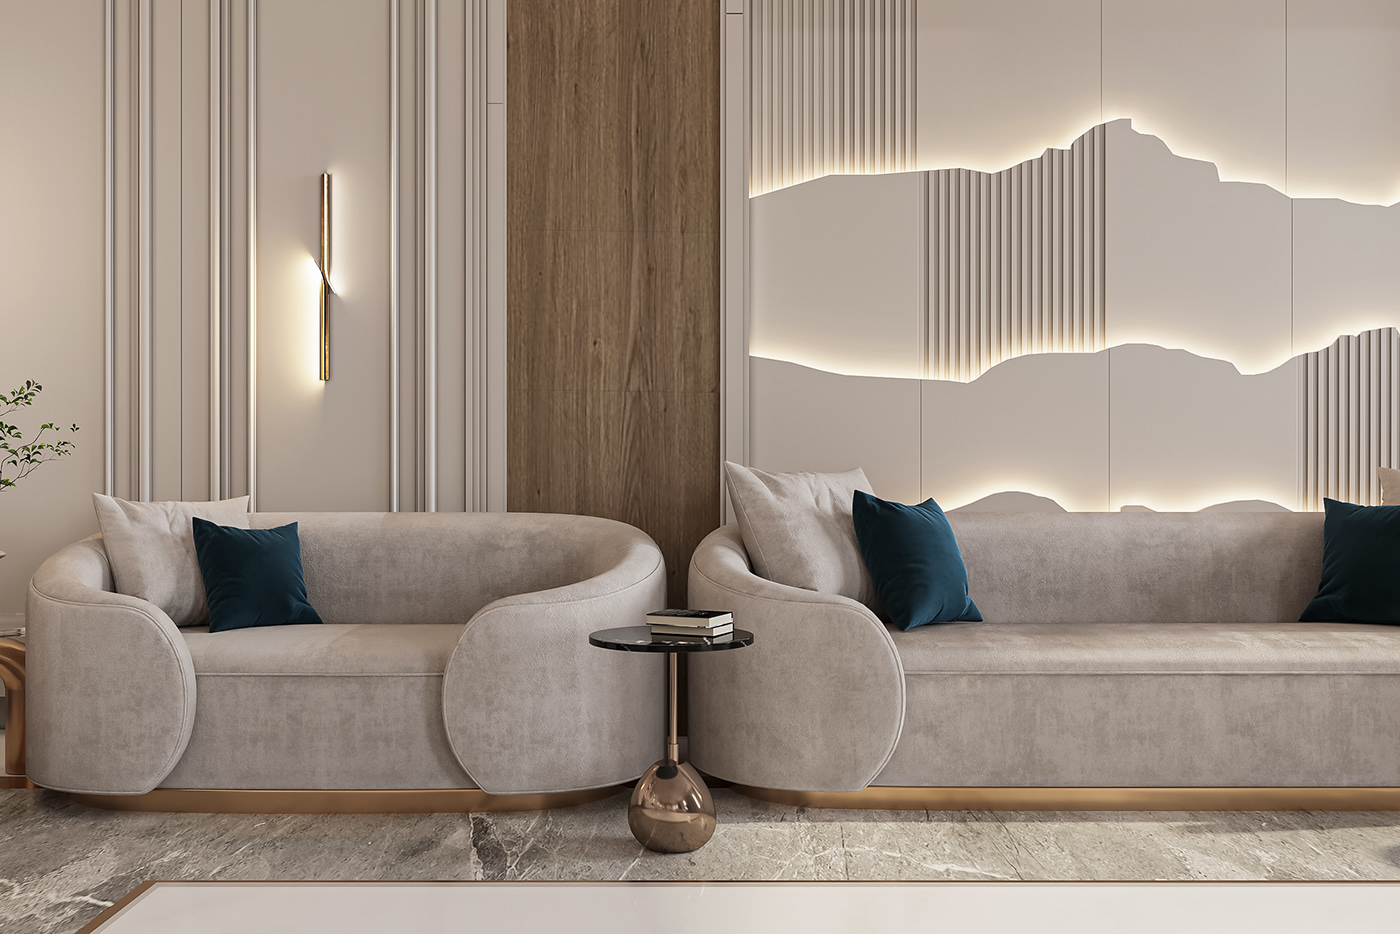 Nouran Abozeid 3ds max Render architecture interior design  modern visualization corona exterior archviz